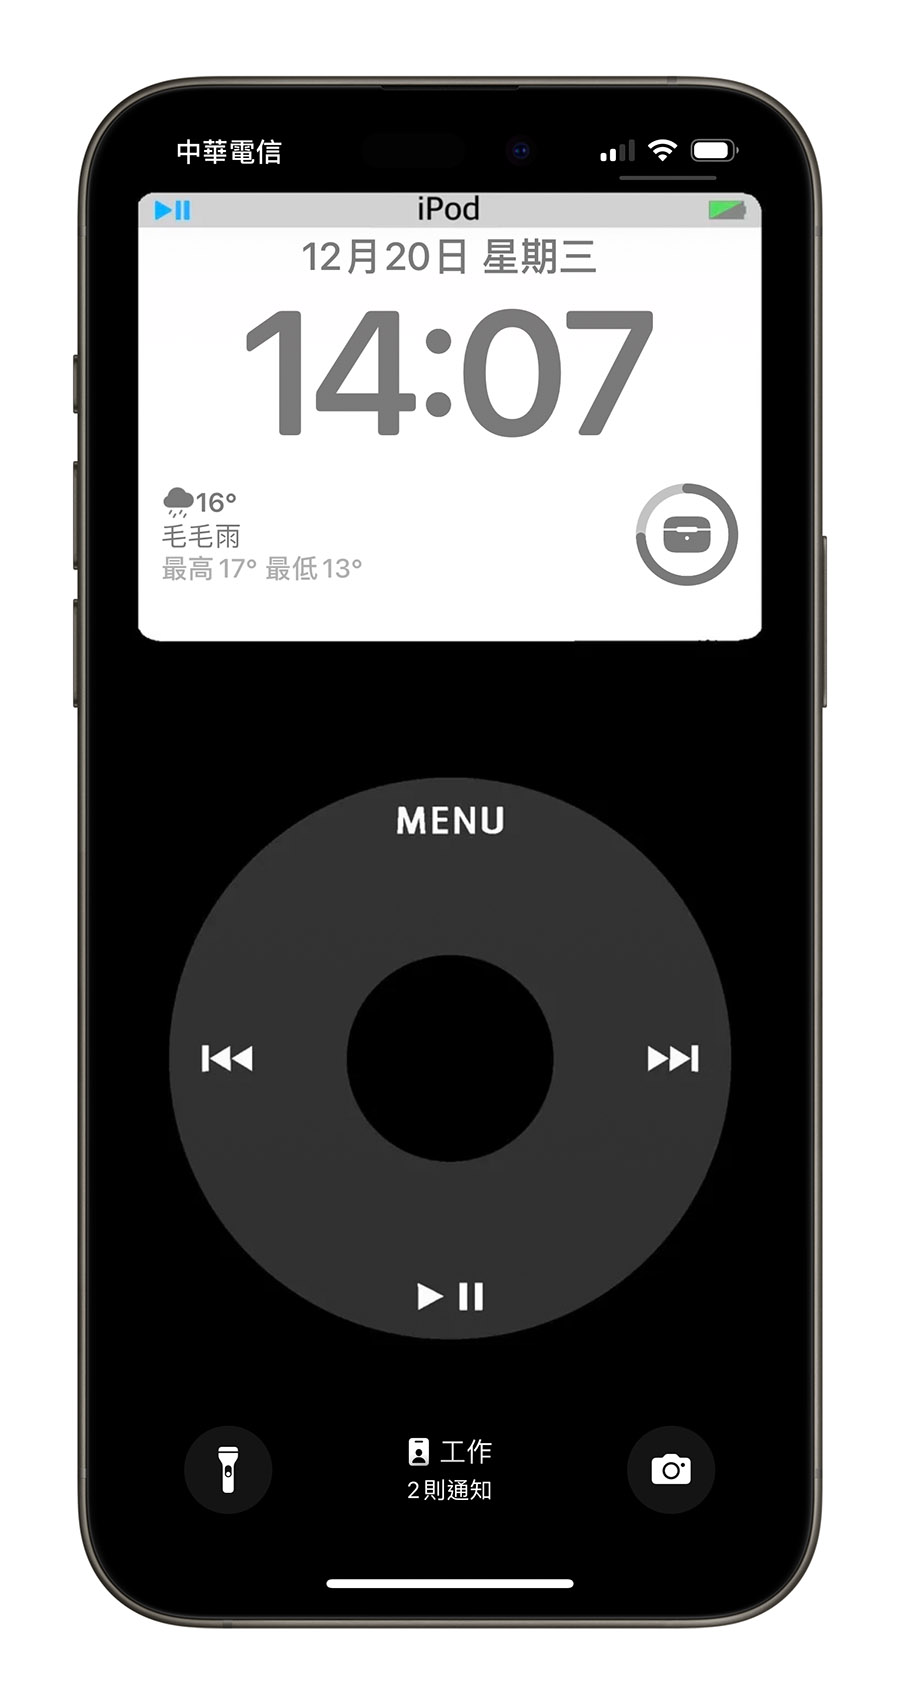 iPhone 桌布 分享 推薦 下載 iPod